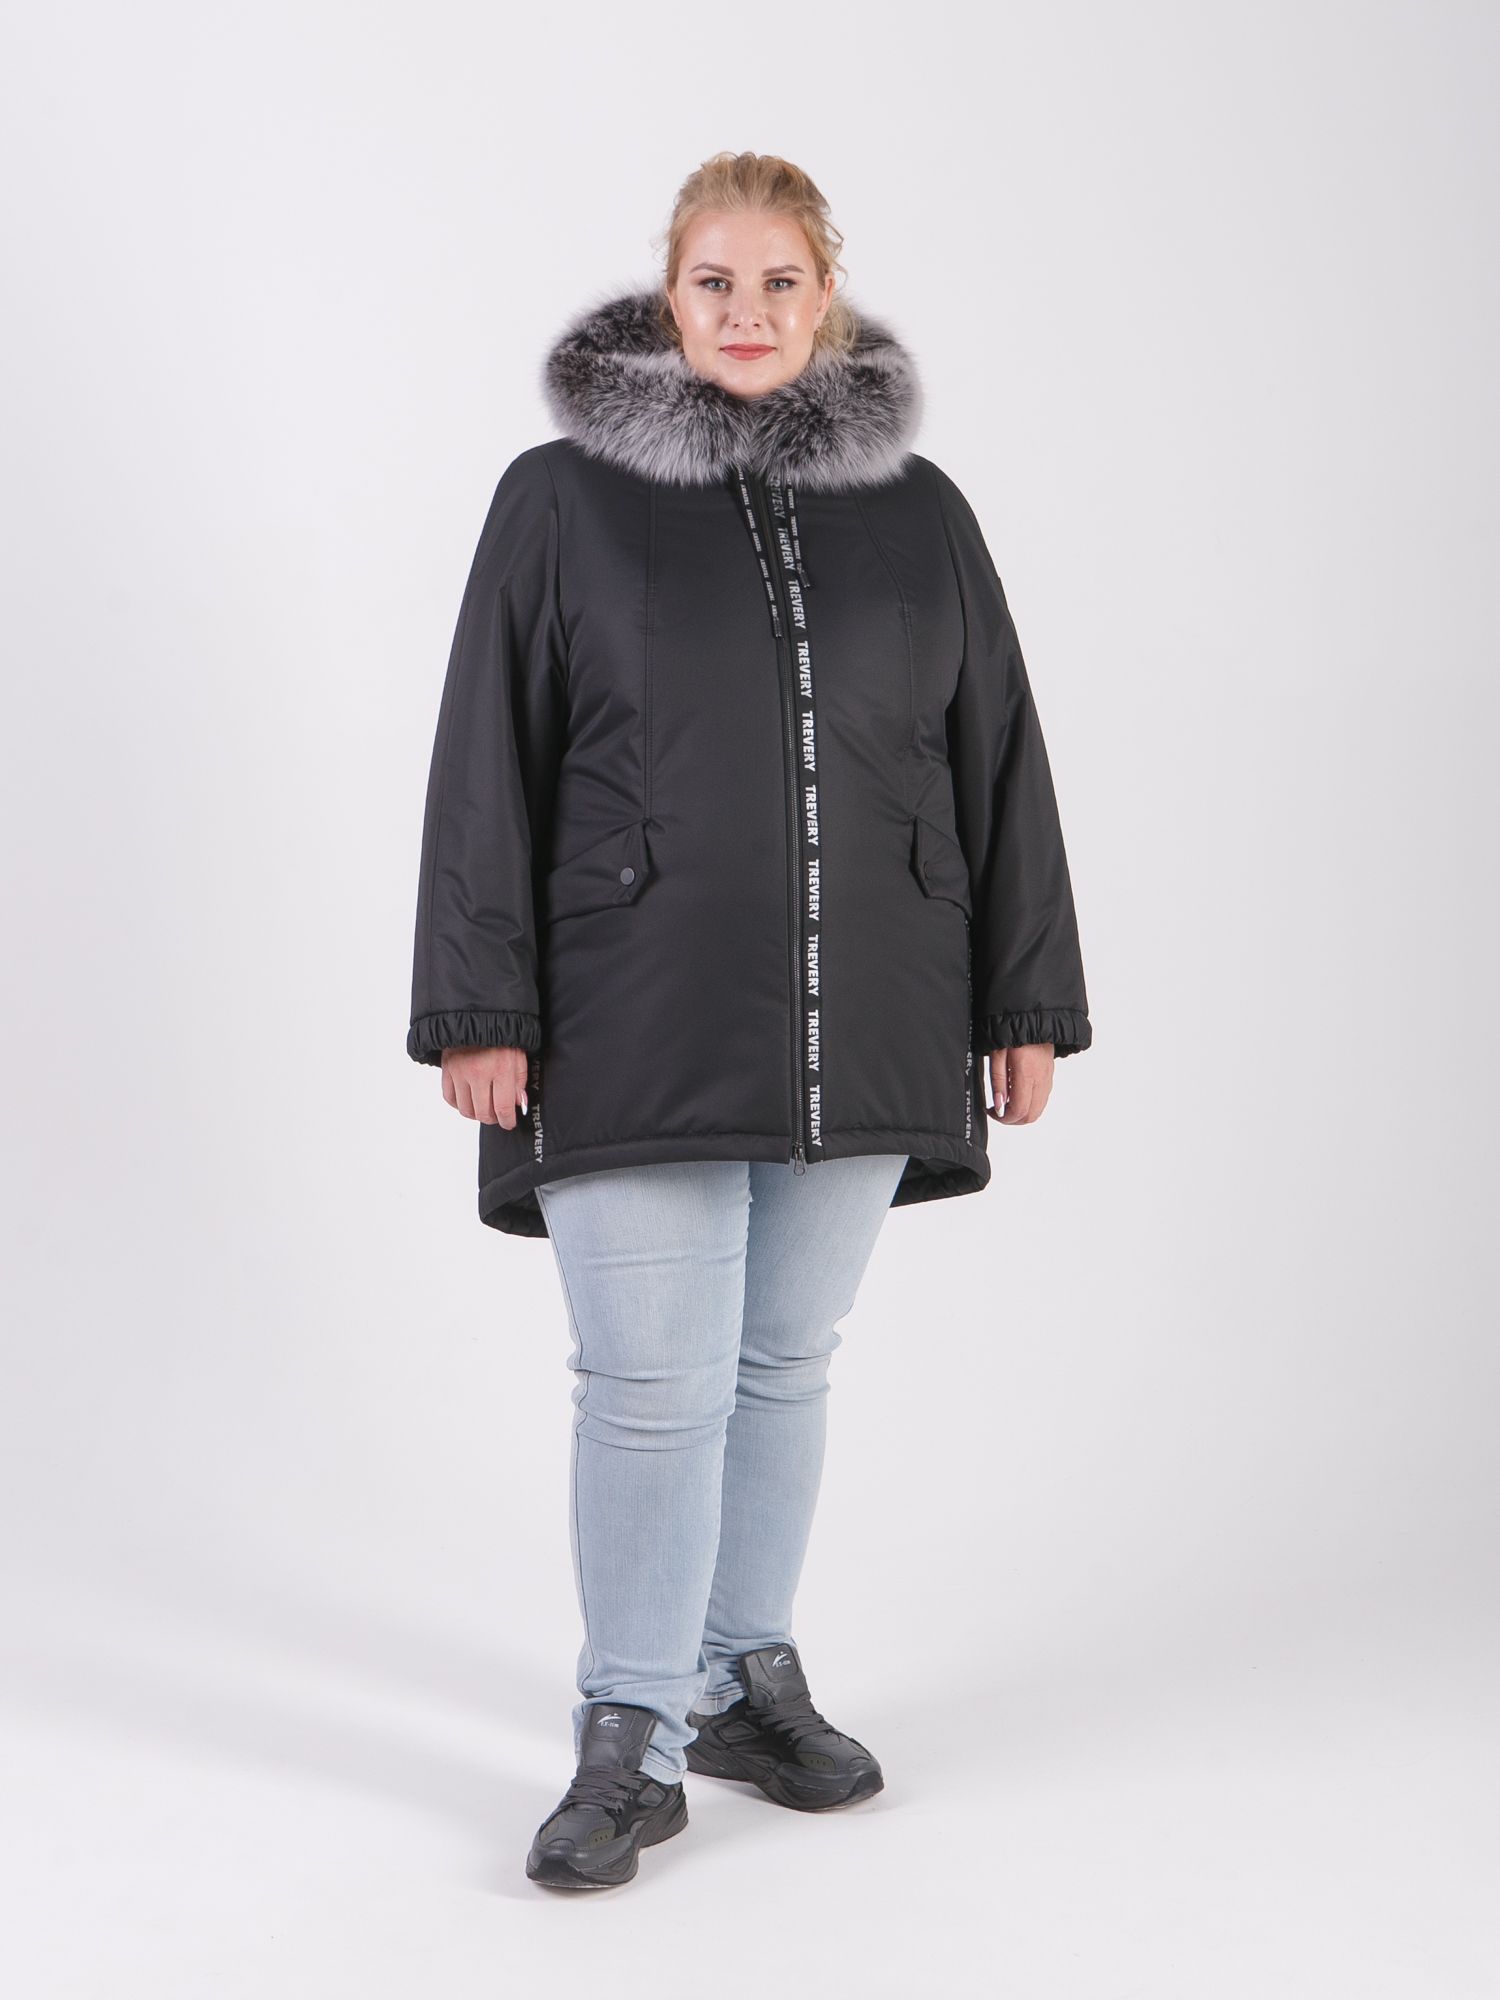 Женская мембранная куртка черного цвета с брендированной лентой, модель78834 в цвете черный — купить в интернет-магазине одежды больших размеровTrevery.ru за 20 960р. (отзывы, фото)